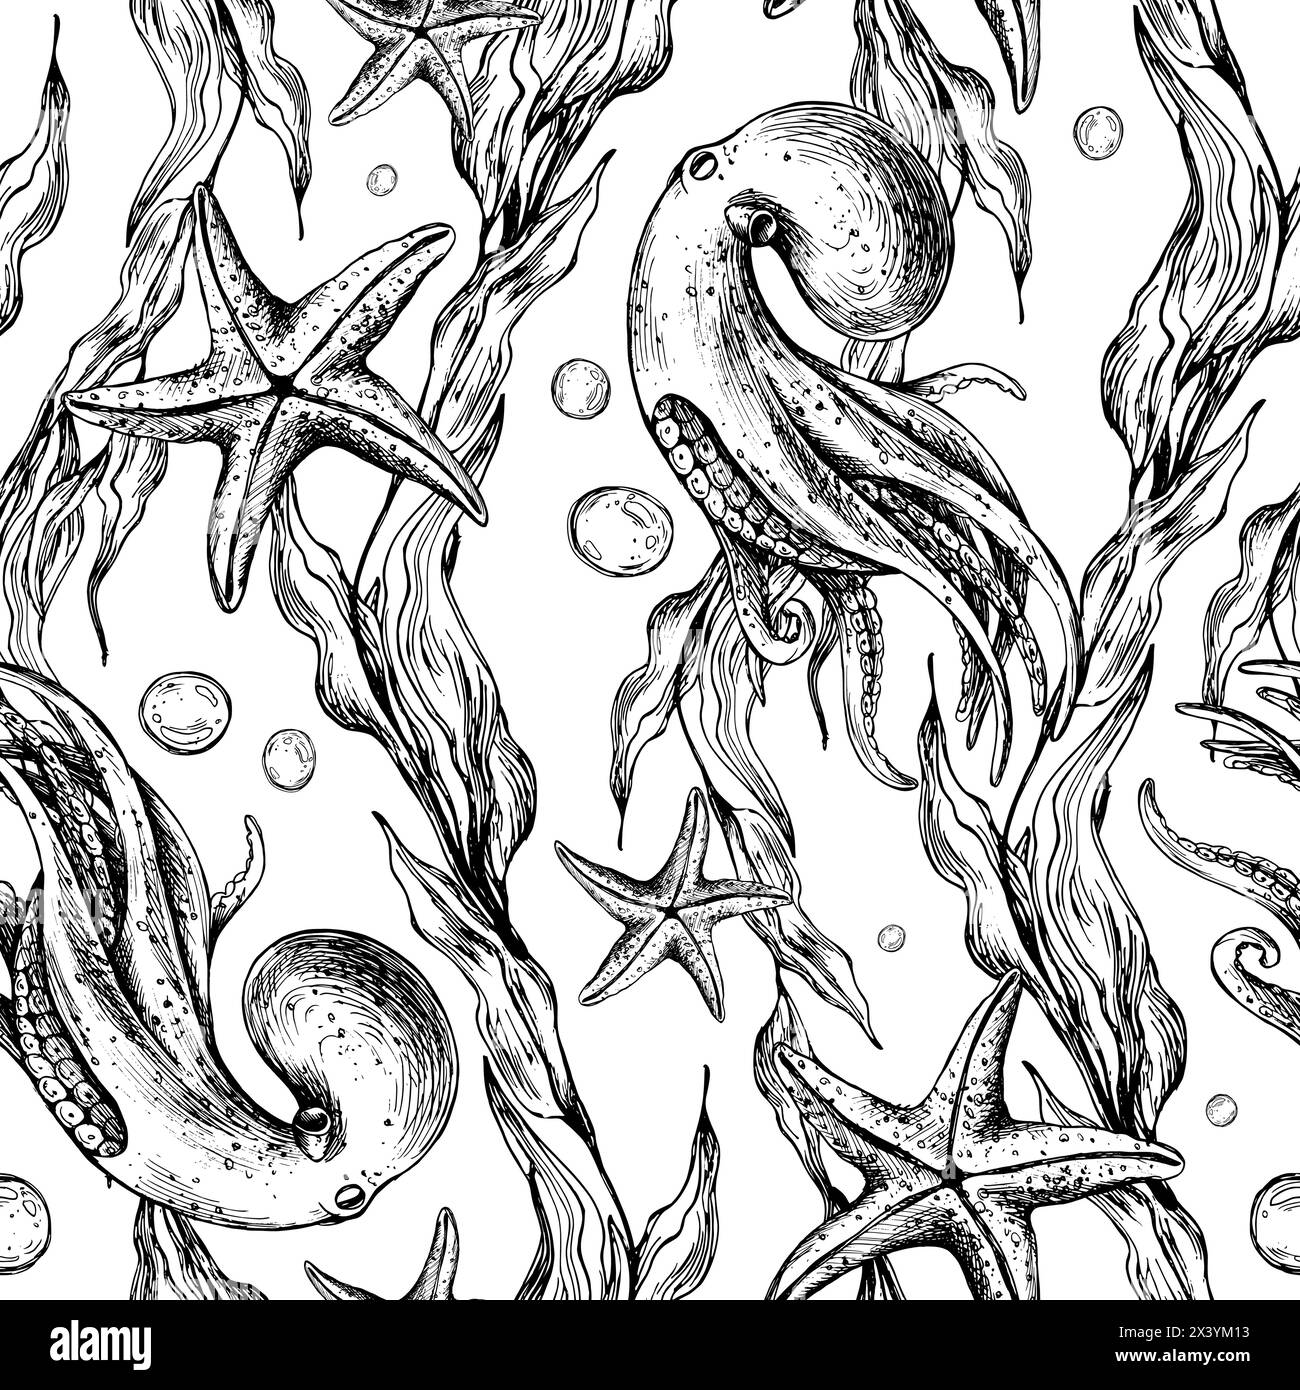 Unterwasserwelt-Clipart mit Meerestieren, Tintenfischen, Seesternen, Blasen und Algen. Grafische Abbildung, handgezeichnet mit schwarzer Tinte. Nahtloses Muster EPS Stock Vektor